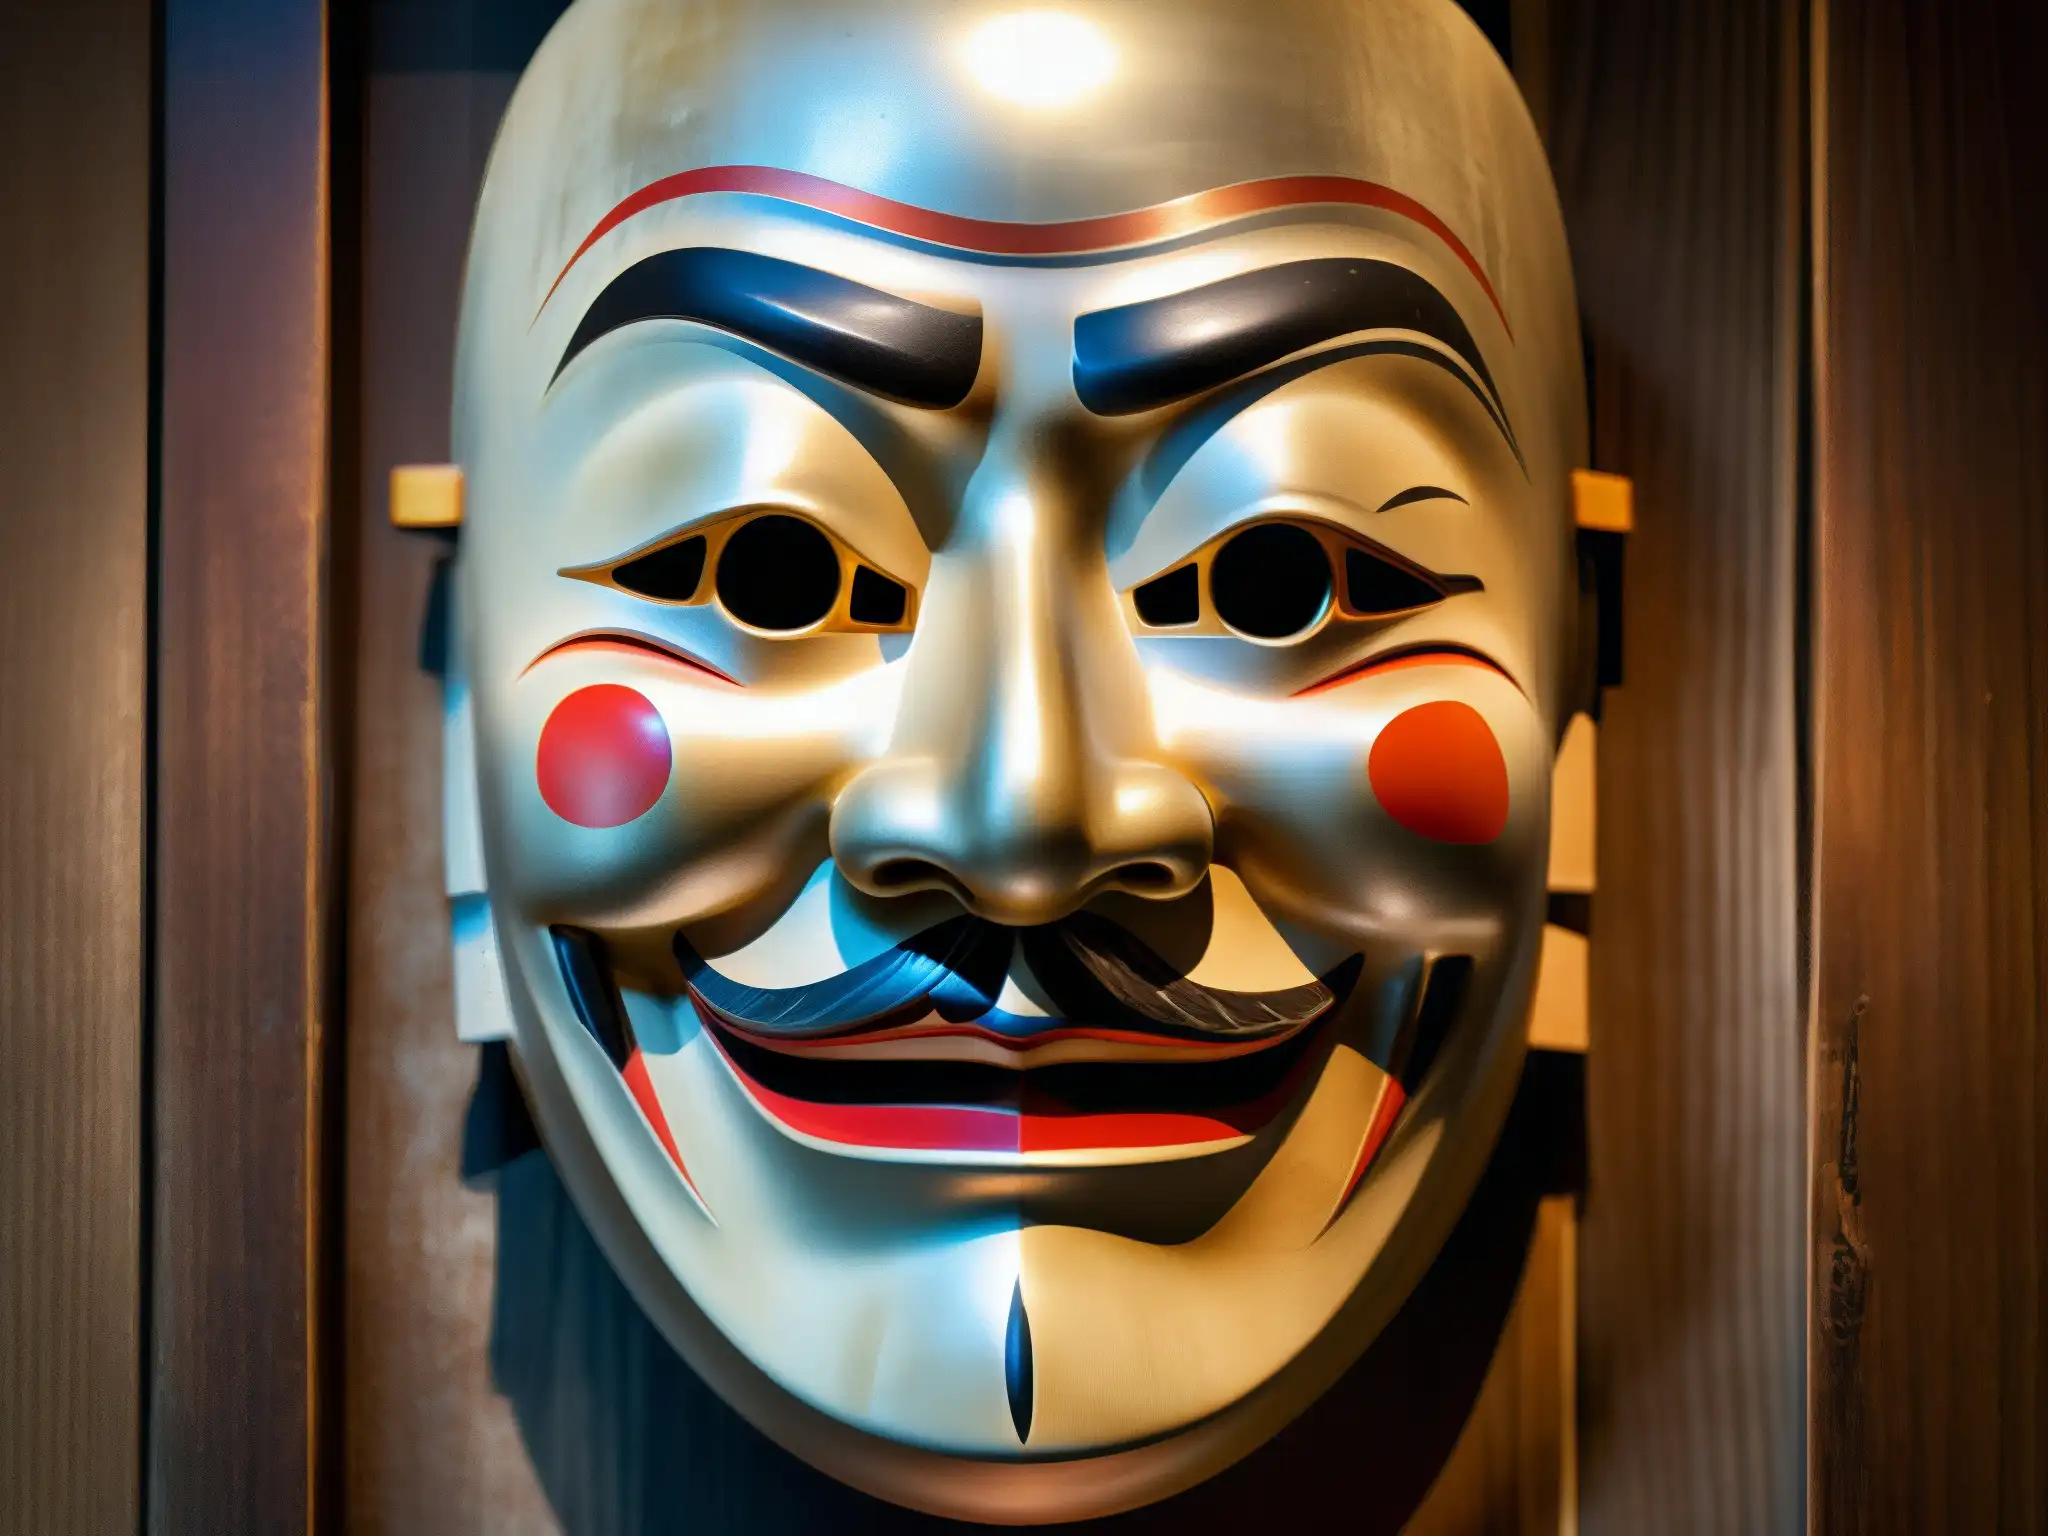 Una máscara Noh japonesa de madera, iluminada por una luz etérea, revela detalles tallados y expresiones fantasmales